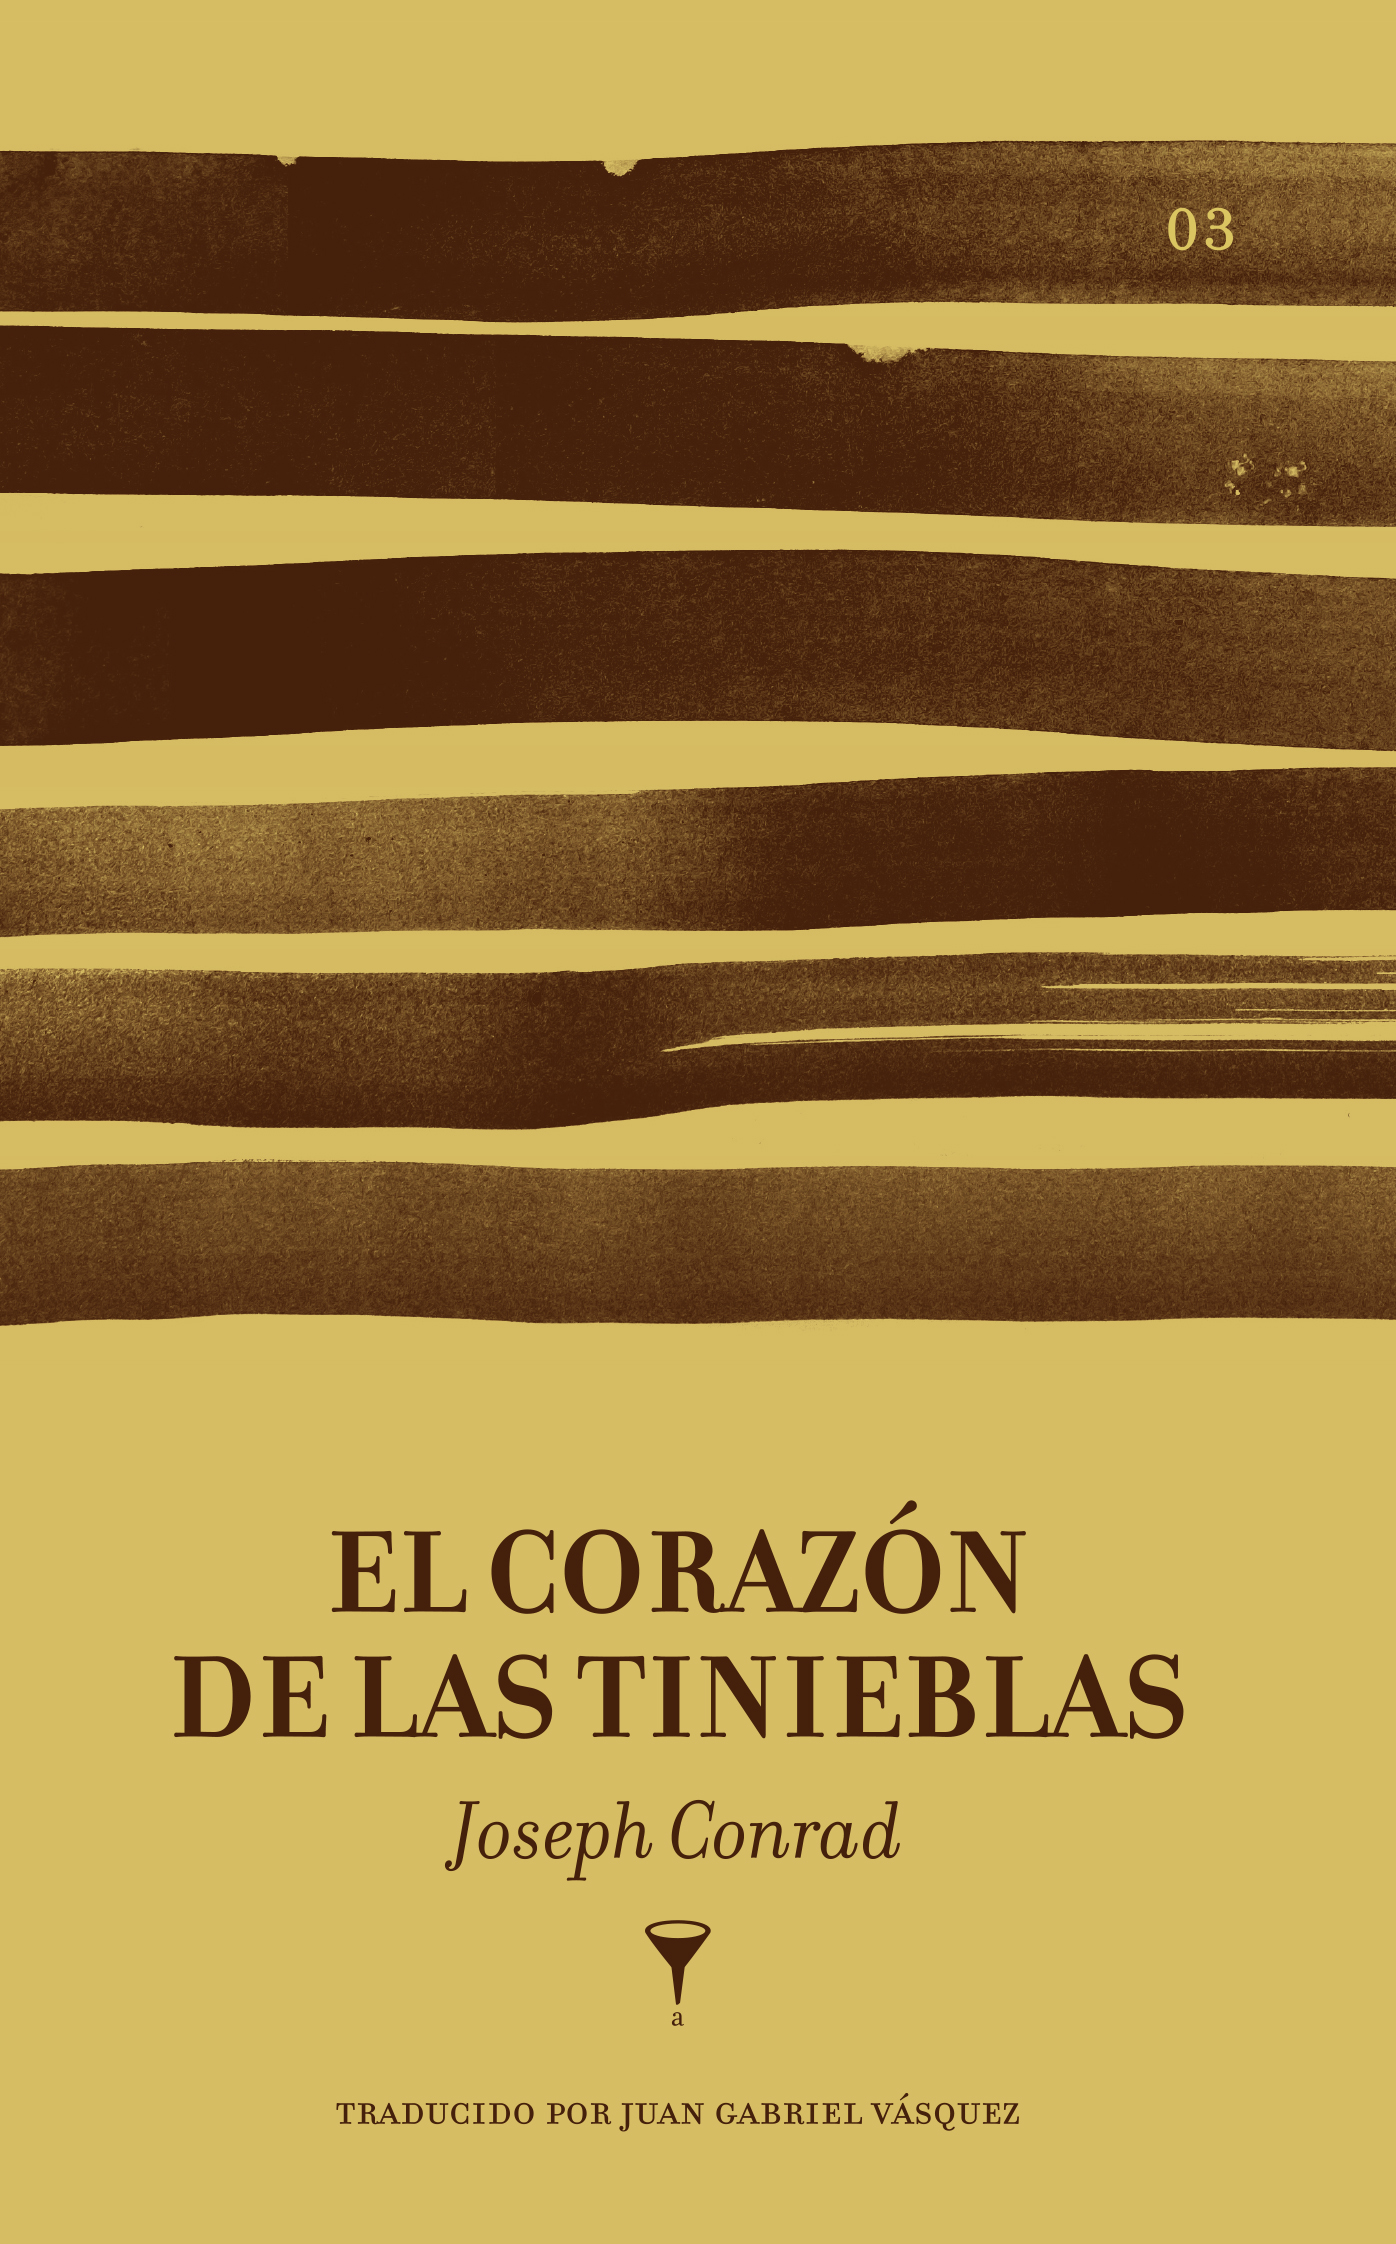 Juan Gabriel Vásquez es el traductor de esta nueva versión de la novela de Joseph Conrad, una de sus obras más importantes. (Cortesía: Angosta Editores).